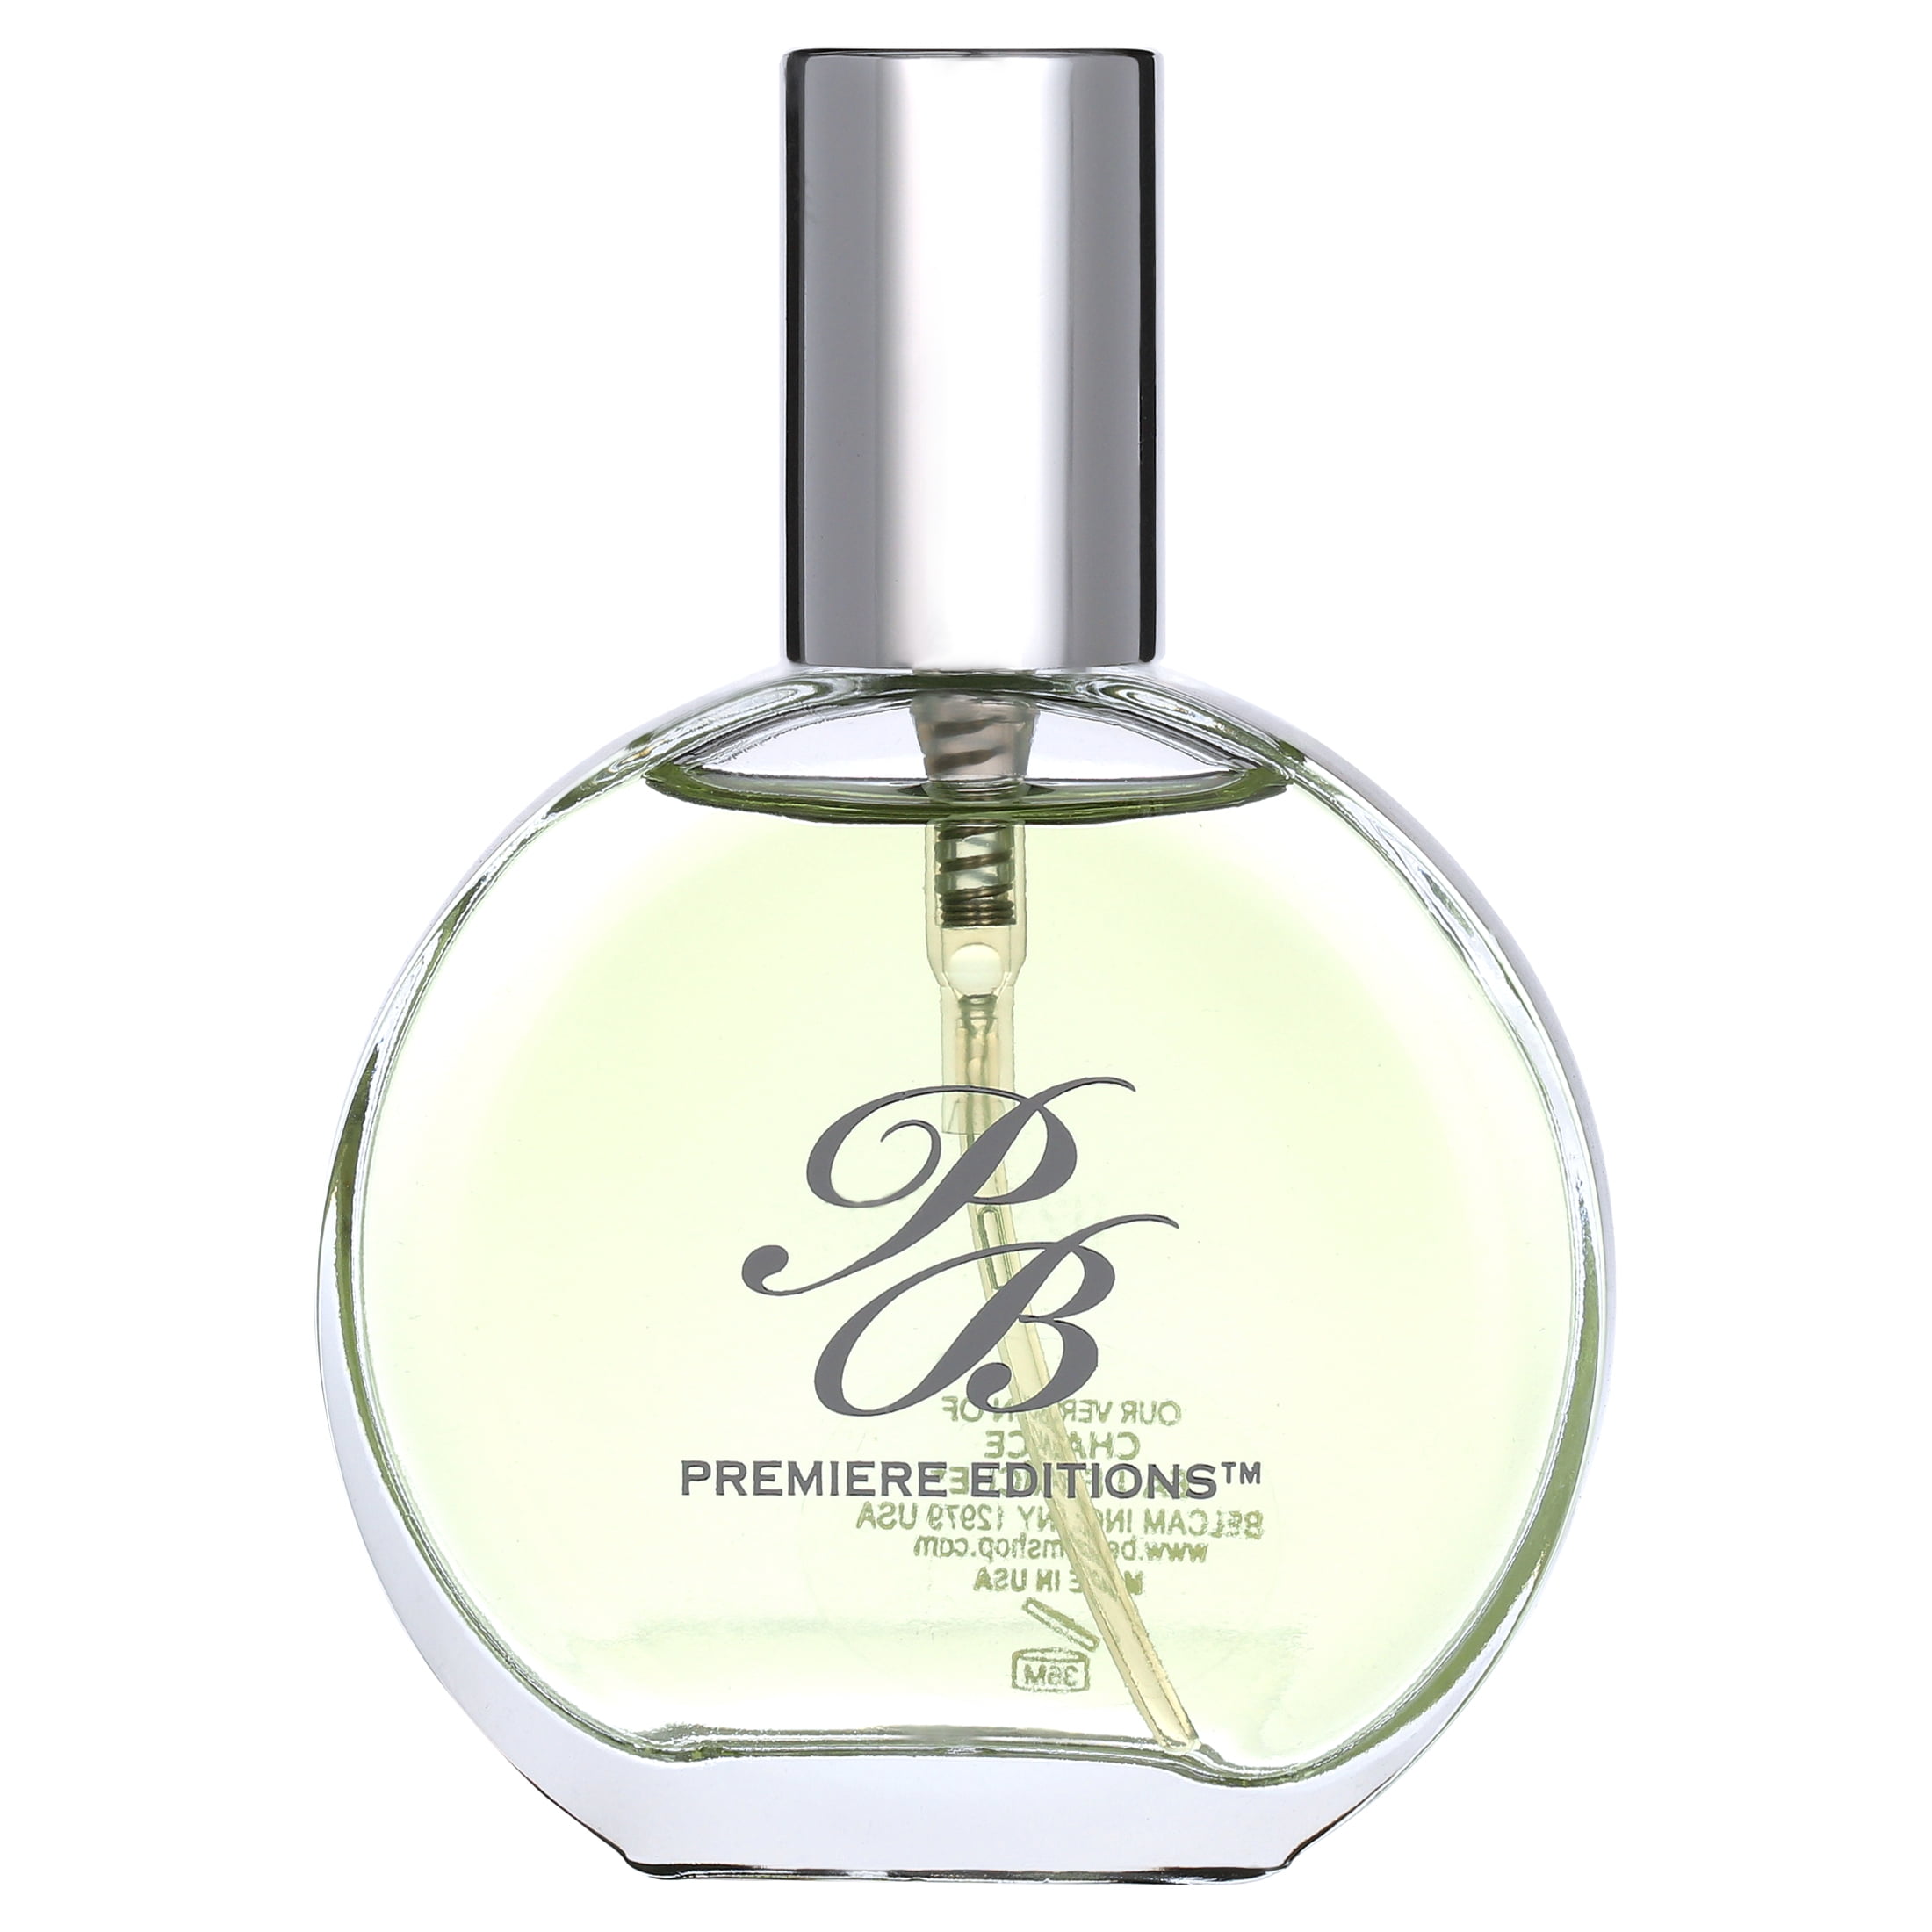 CHANCE EAU FRAÎCHE Eau de Parfum — CHANEL Fragrance 